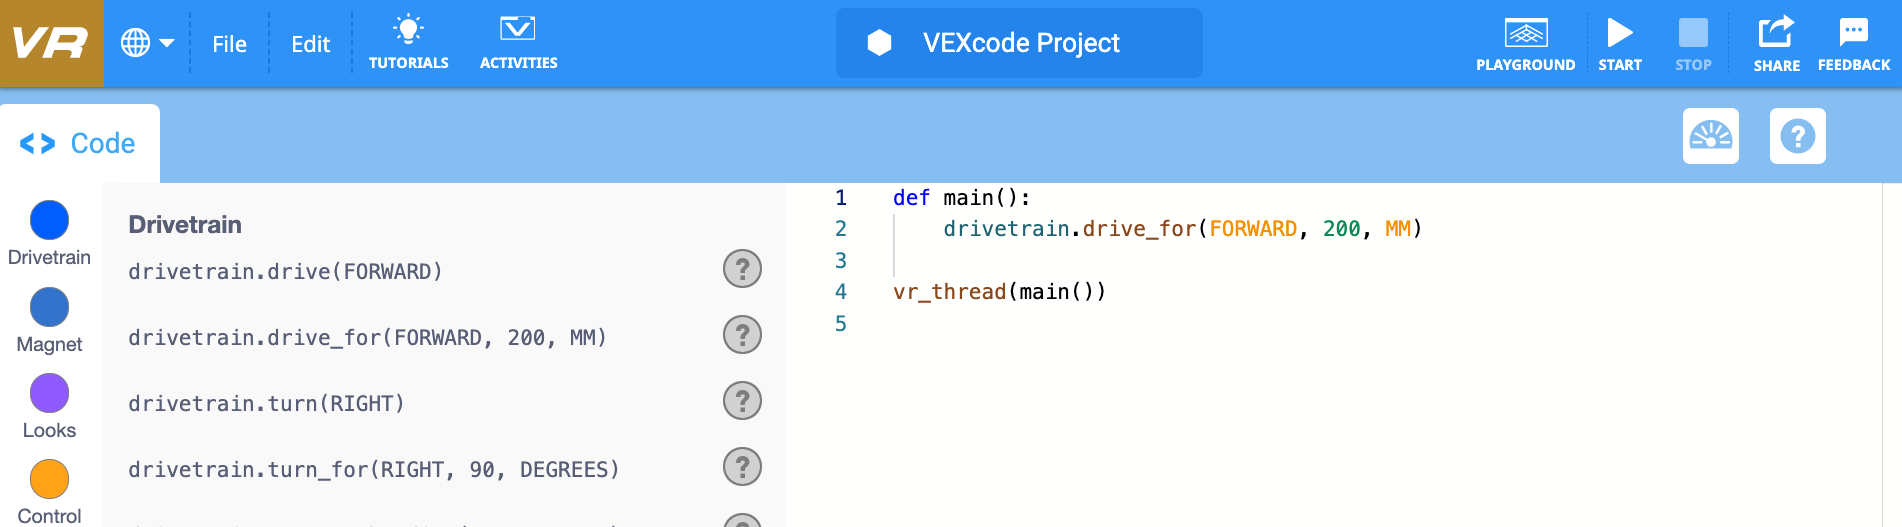 VEXcode VR Python-modus